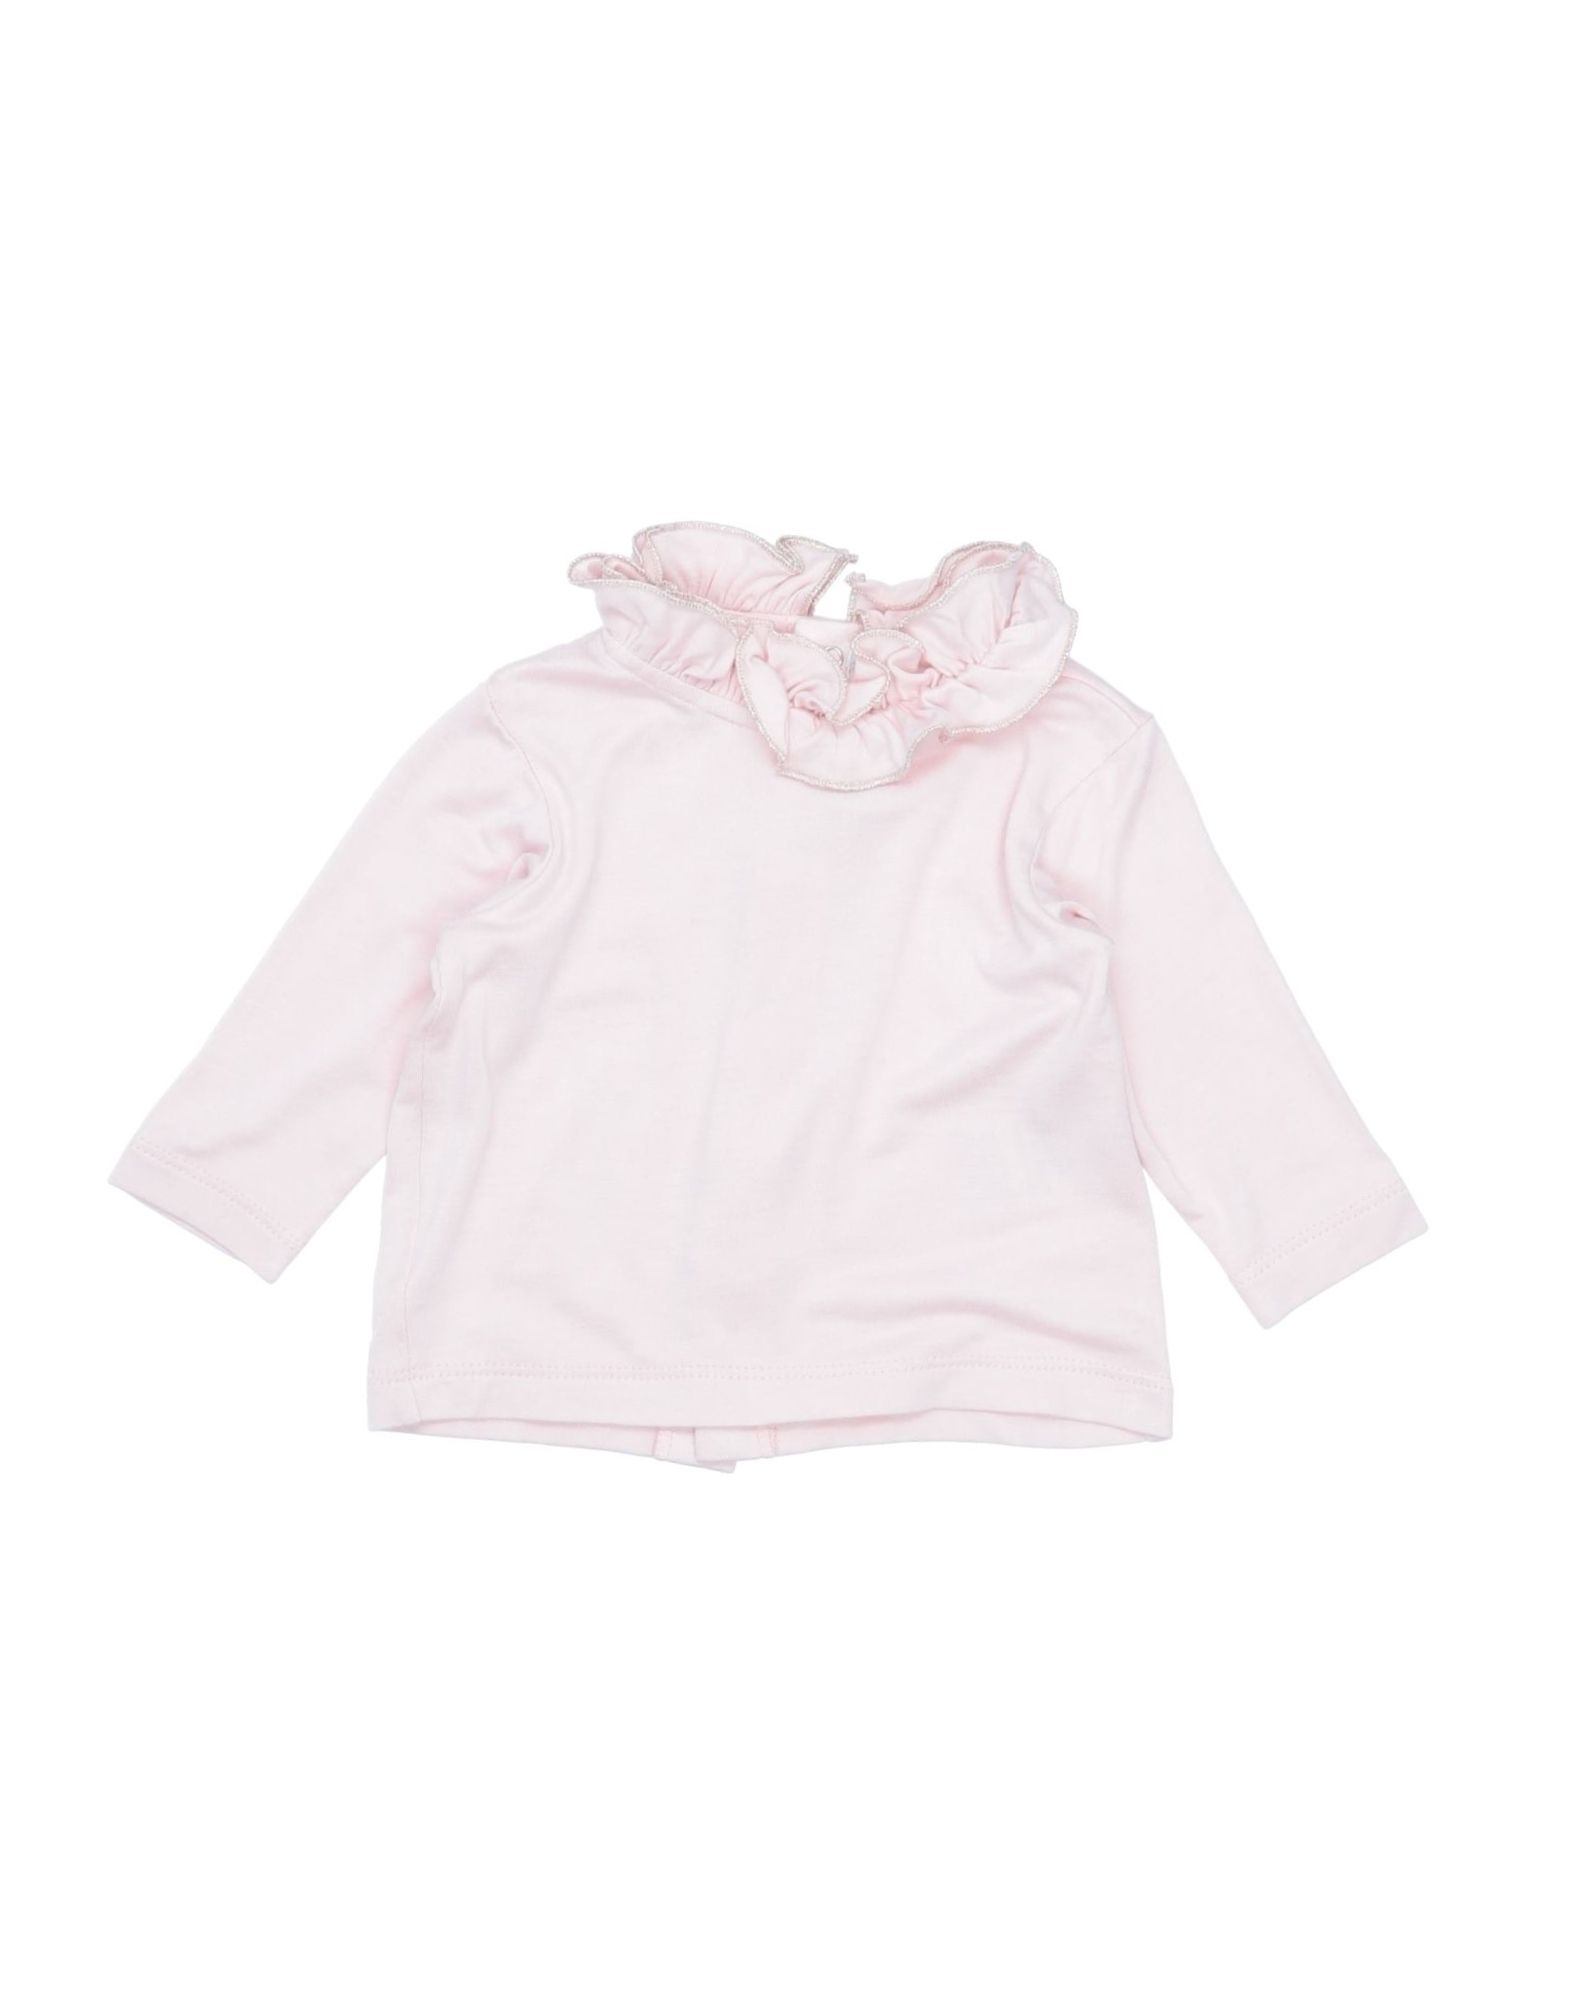 Aletta Kids' T-shirts In Light Pink